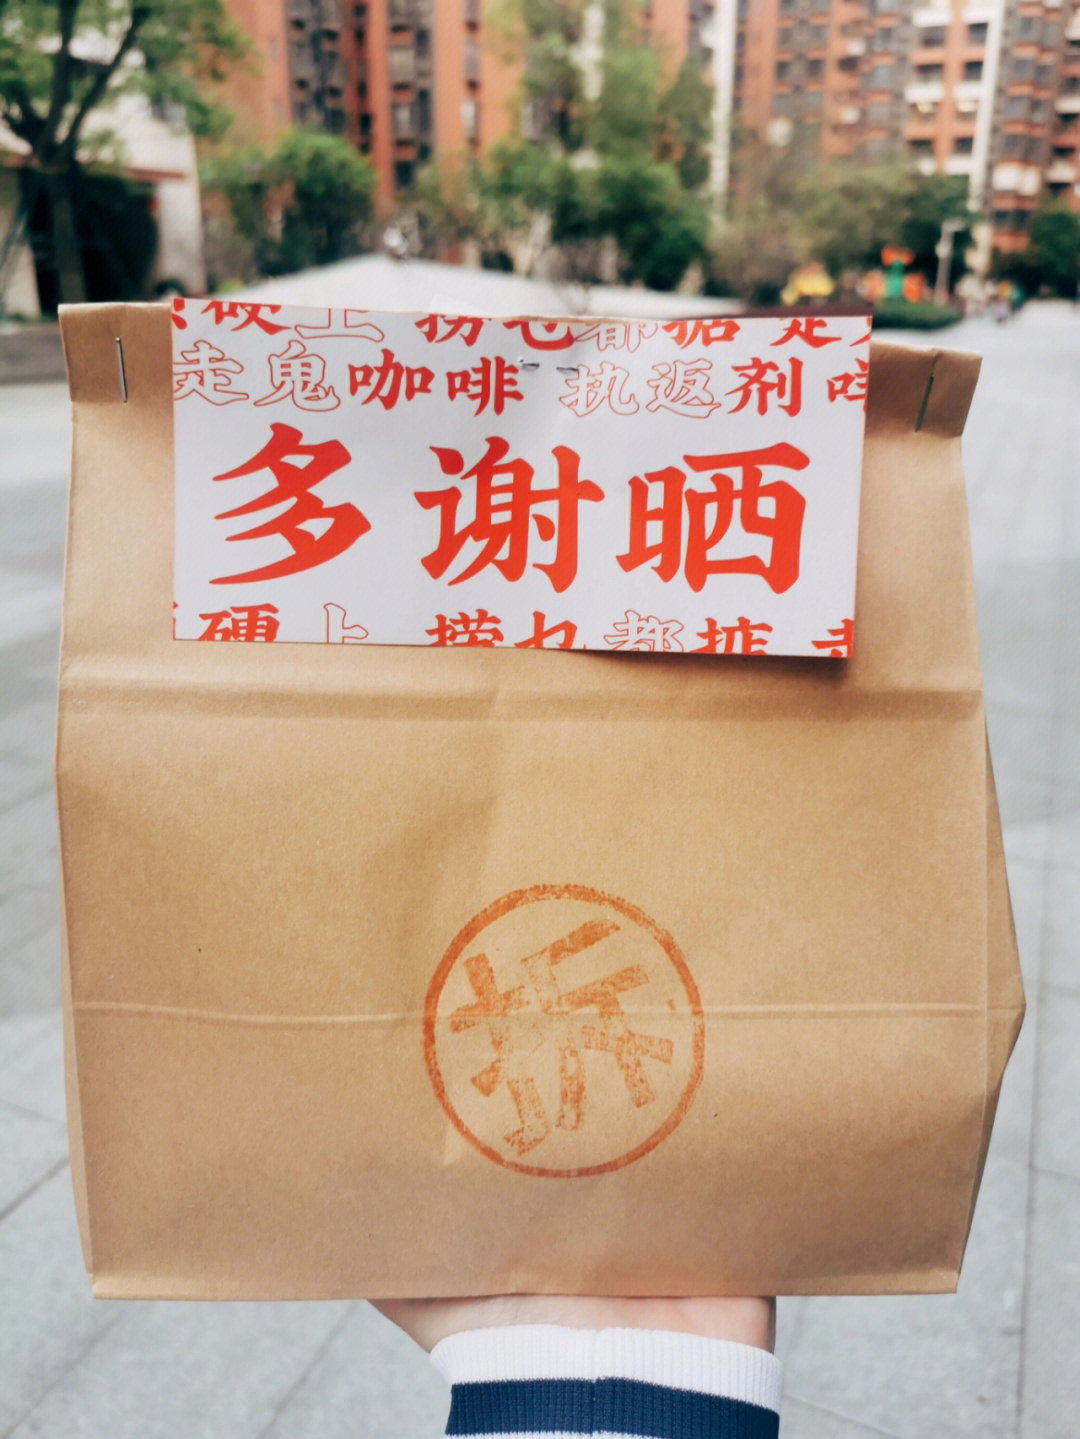 配上粤语字体,非常有广东特色!易拉罐还用大白兔奶糖纸包装非常可爱!